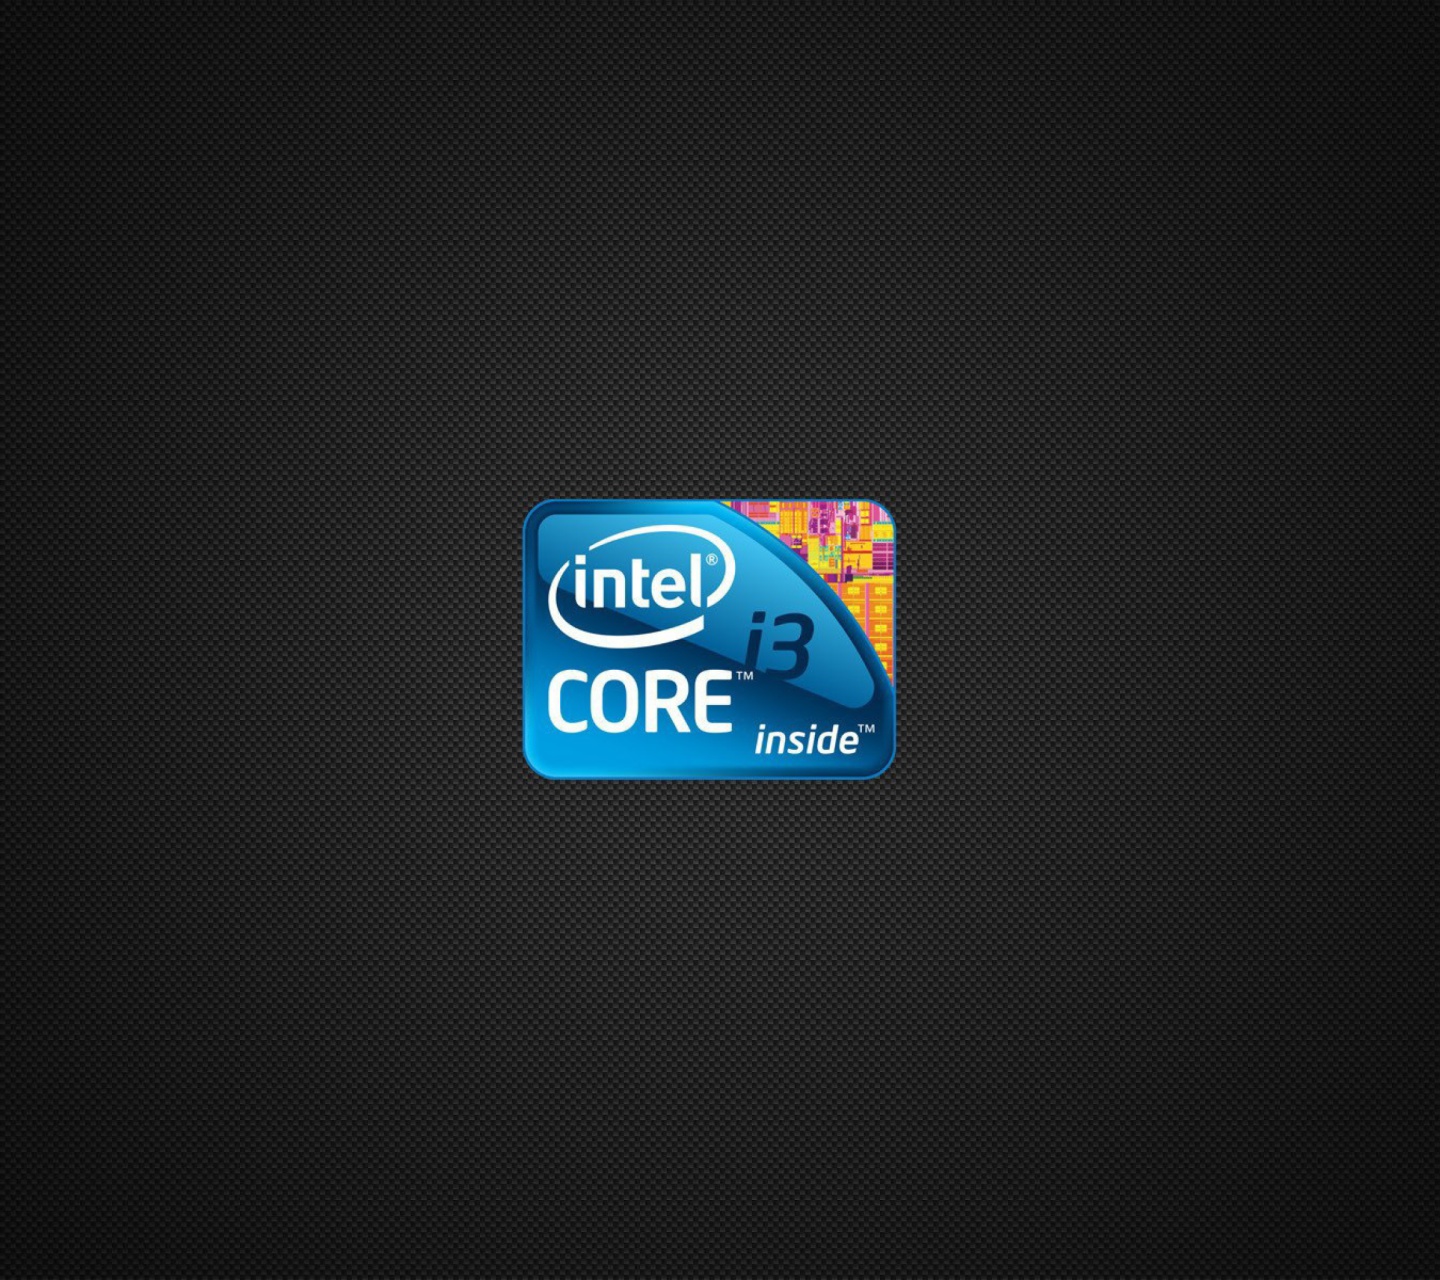 Intel Core i3 Processor wallpaper 1440x1280